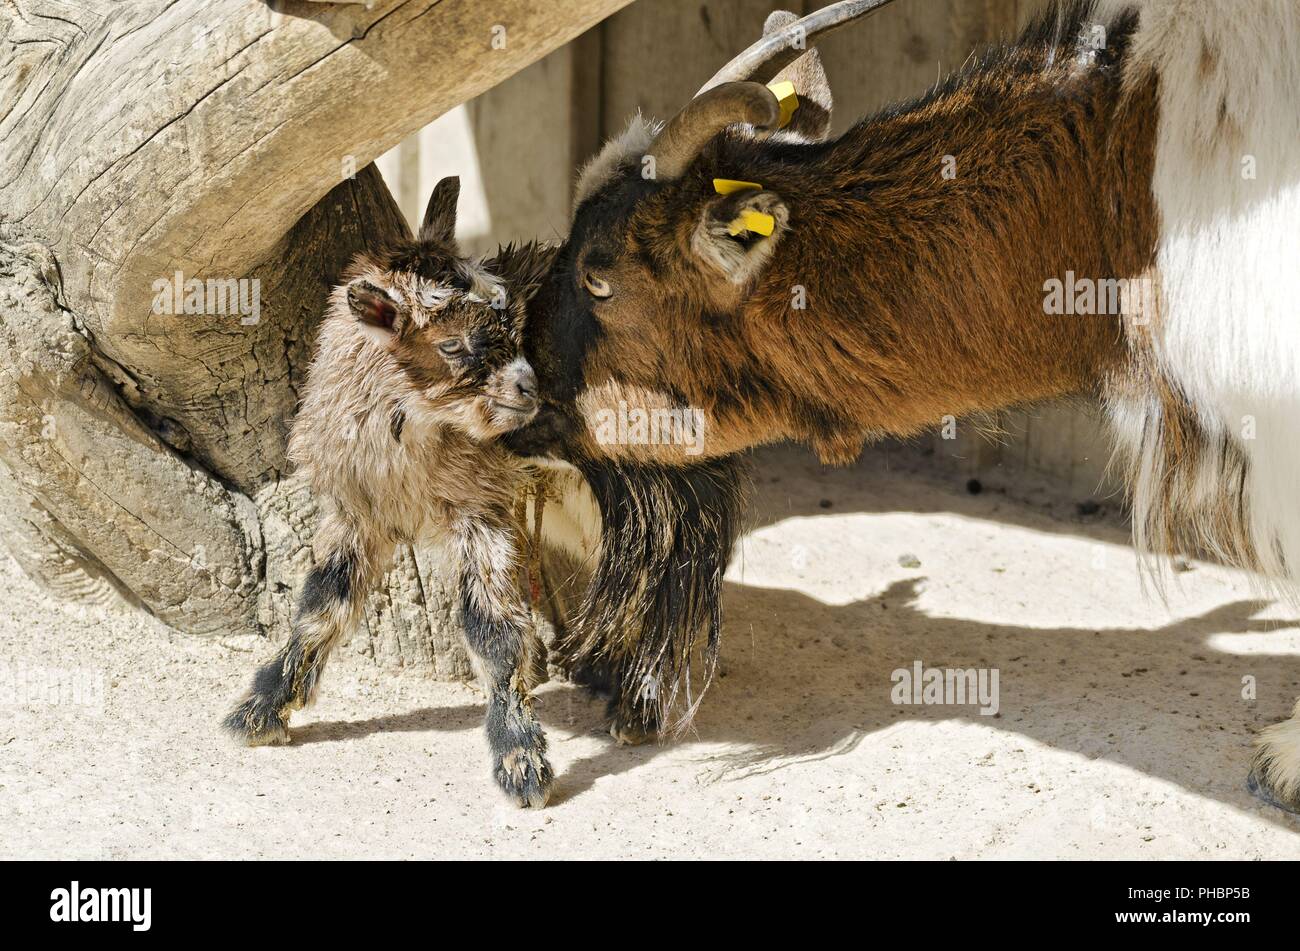 Madre de cabra enana de limpieza de su recién nacido Foto de stock